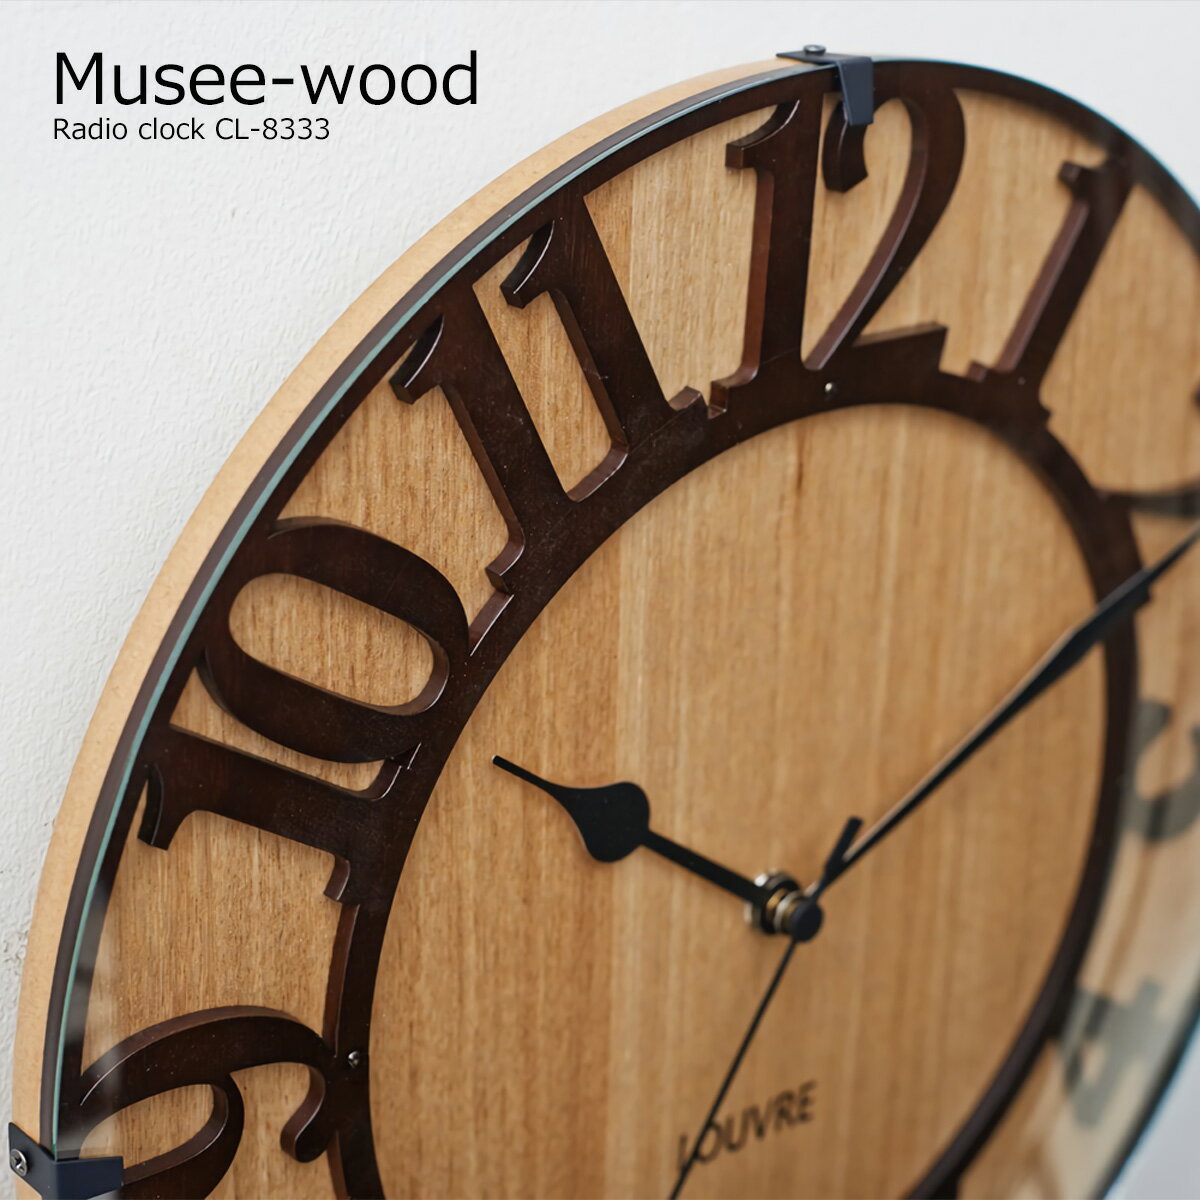 壁掛け時計 電波 おしゃれ 電波時計 時計 壁掛け 北欧 掛け時計 Musee wood ミュゼ ウッドCL-8333 木製 ナチュラル インテリア ウォールクロック デザイナーズ オシャレ アンティーク ヴィンテージ リビング ダイニング